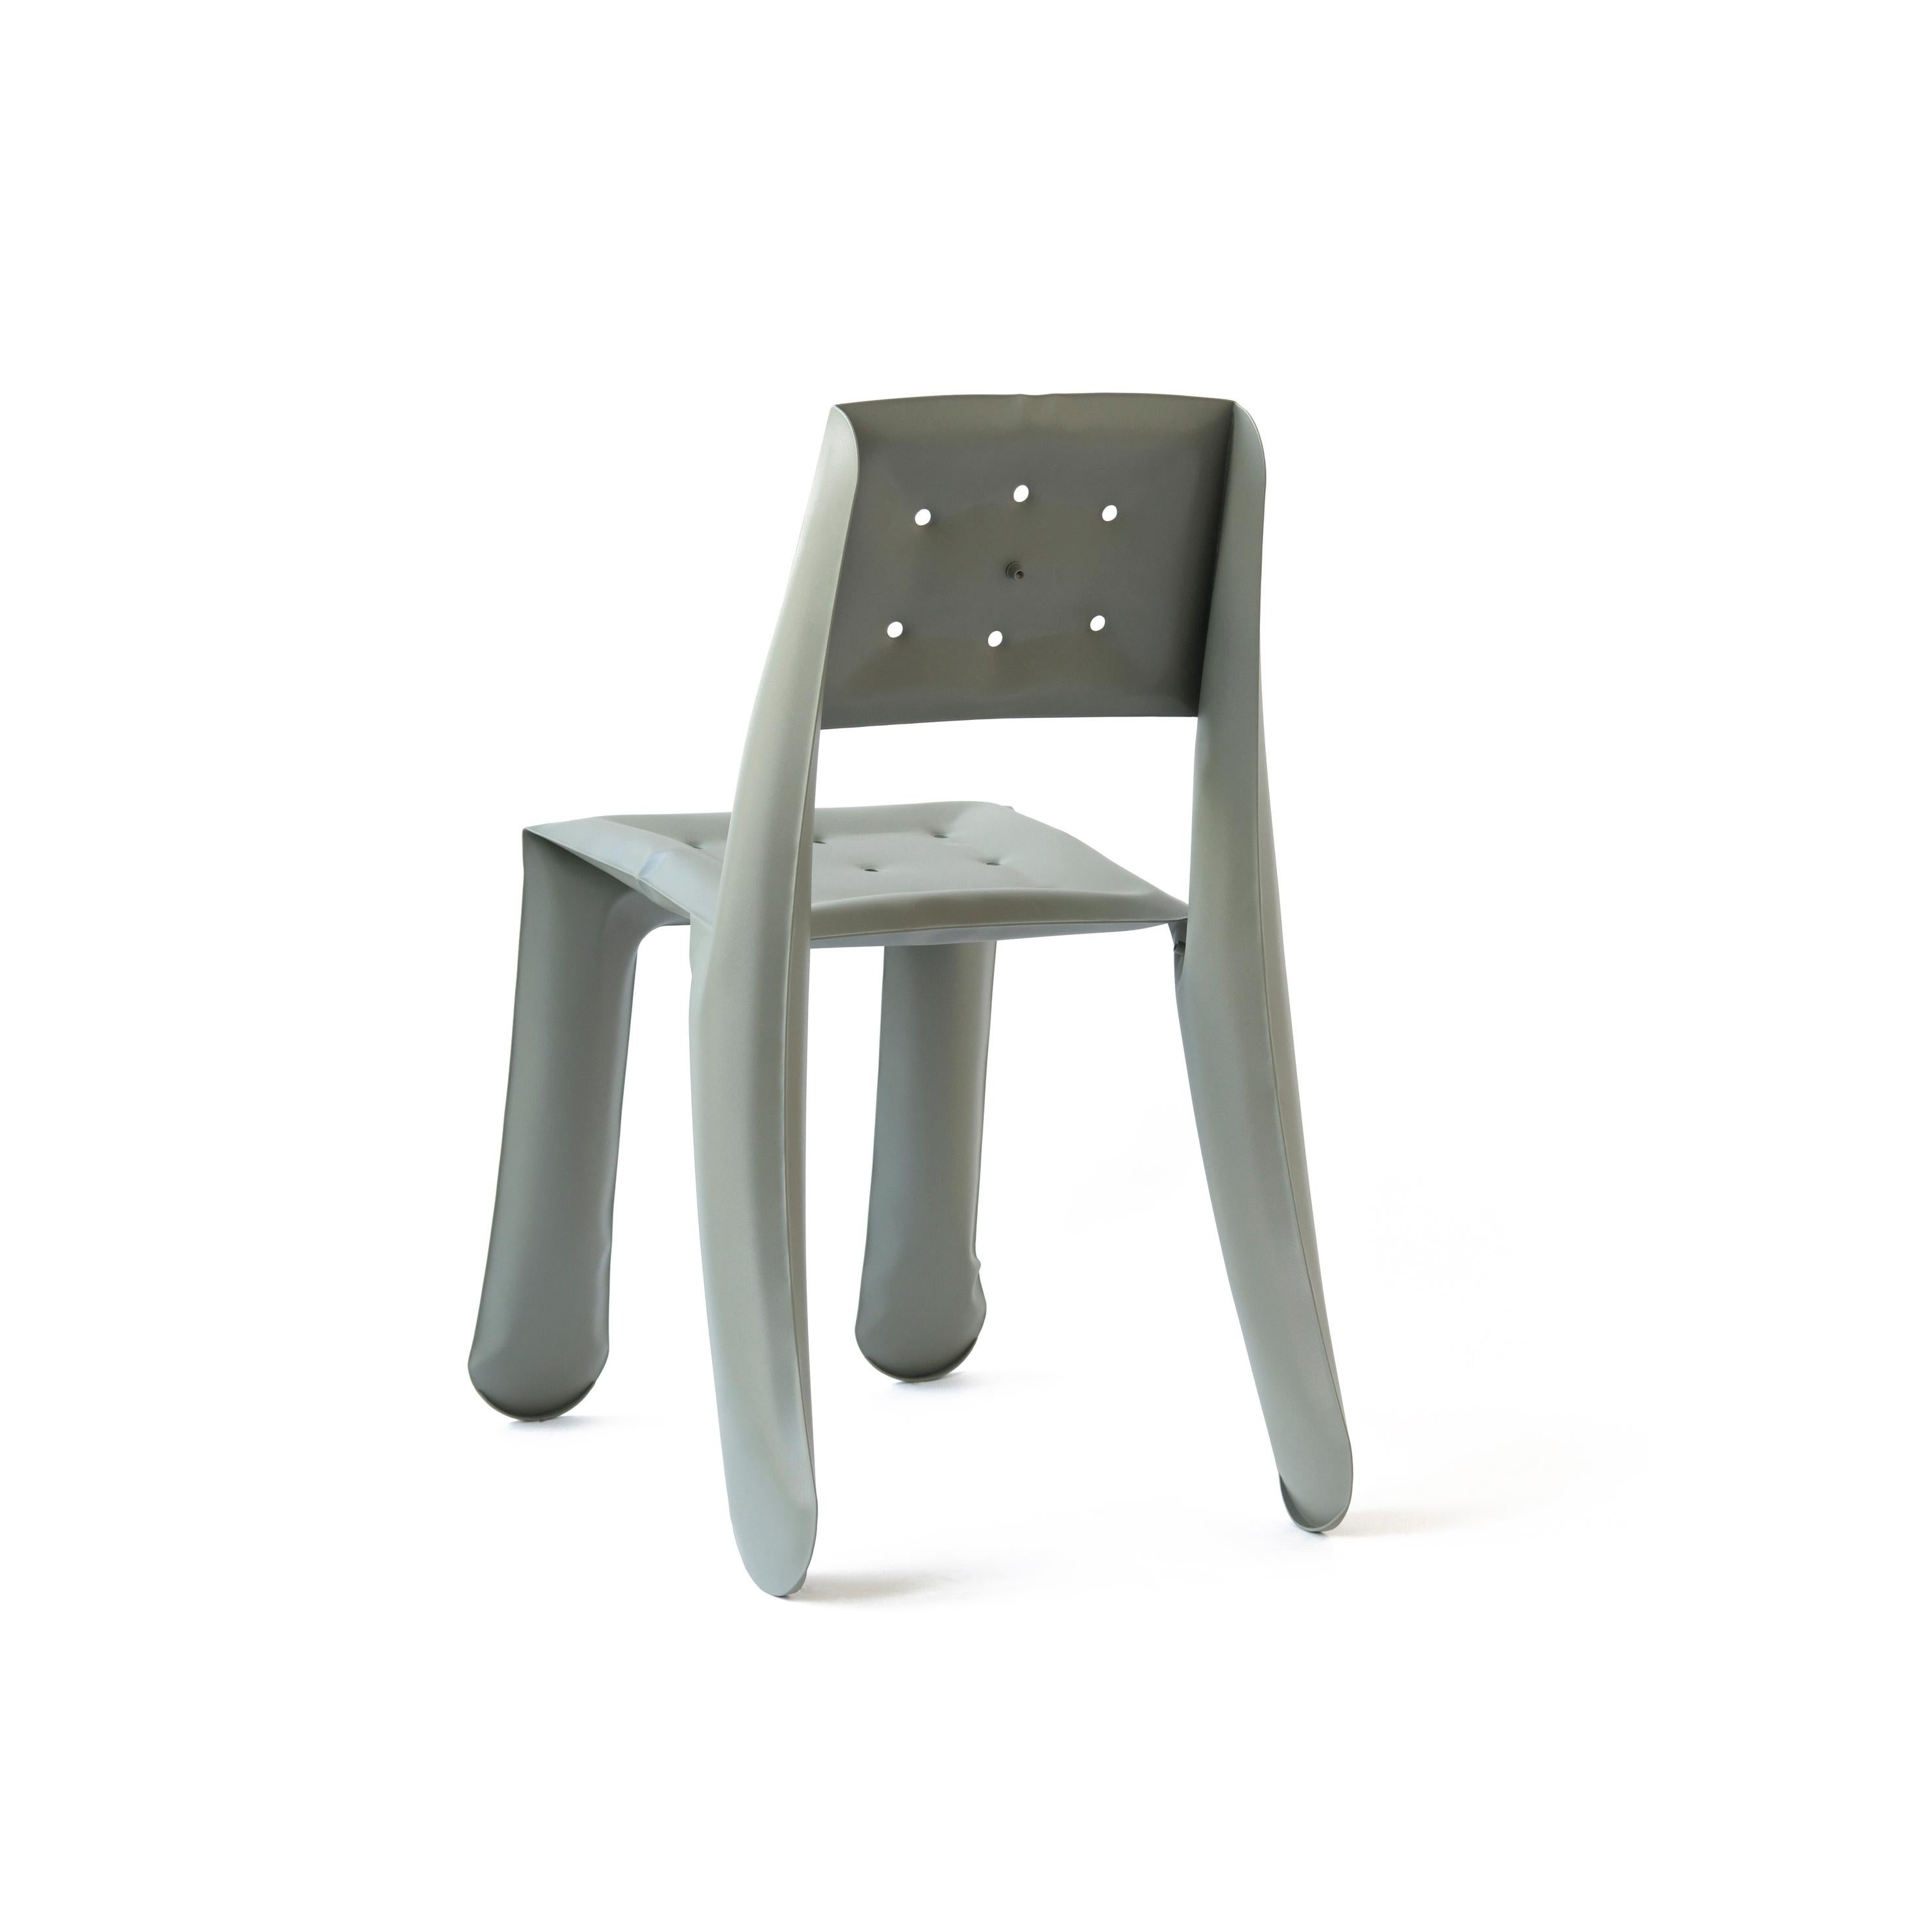 Organic Modern White Matt Aluminum Chippensteel 0.5 Sculptural Chair by Zieta For Sale